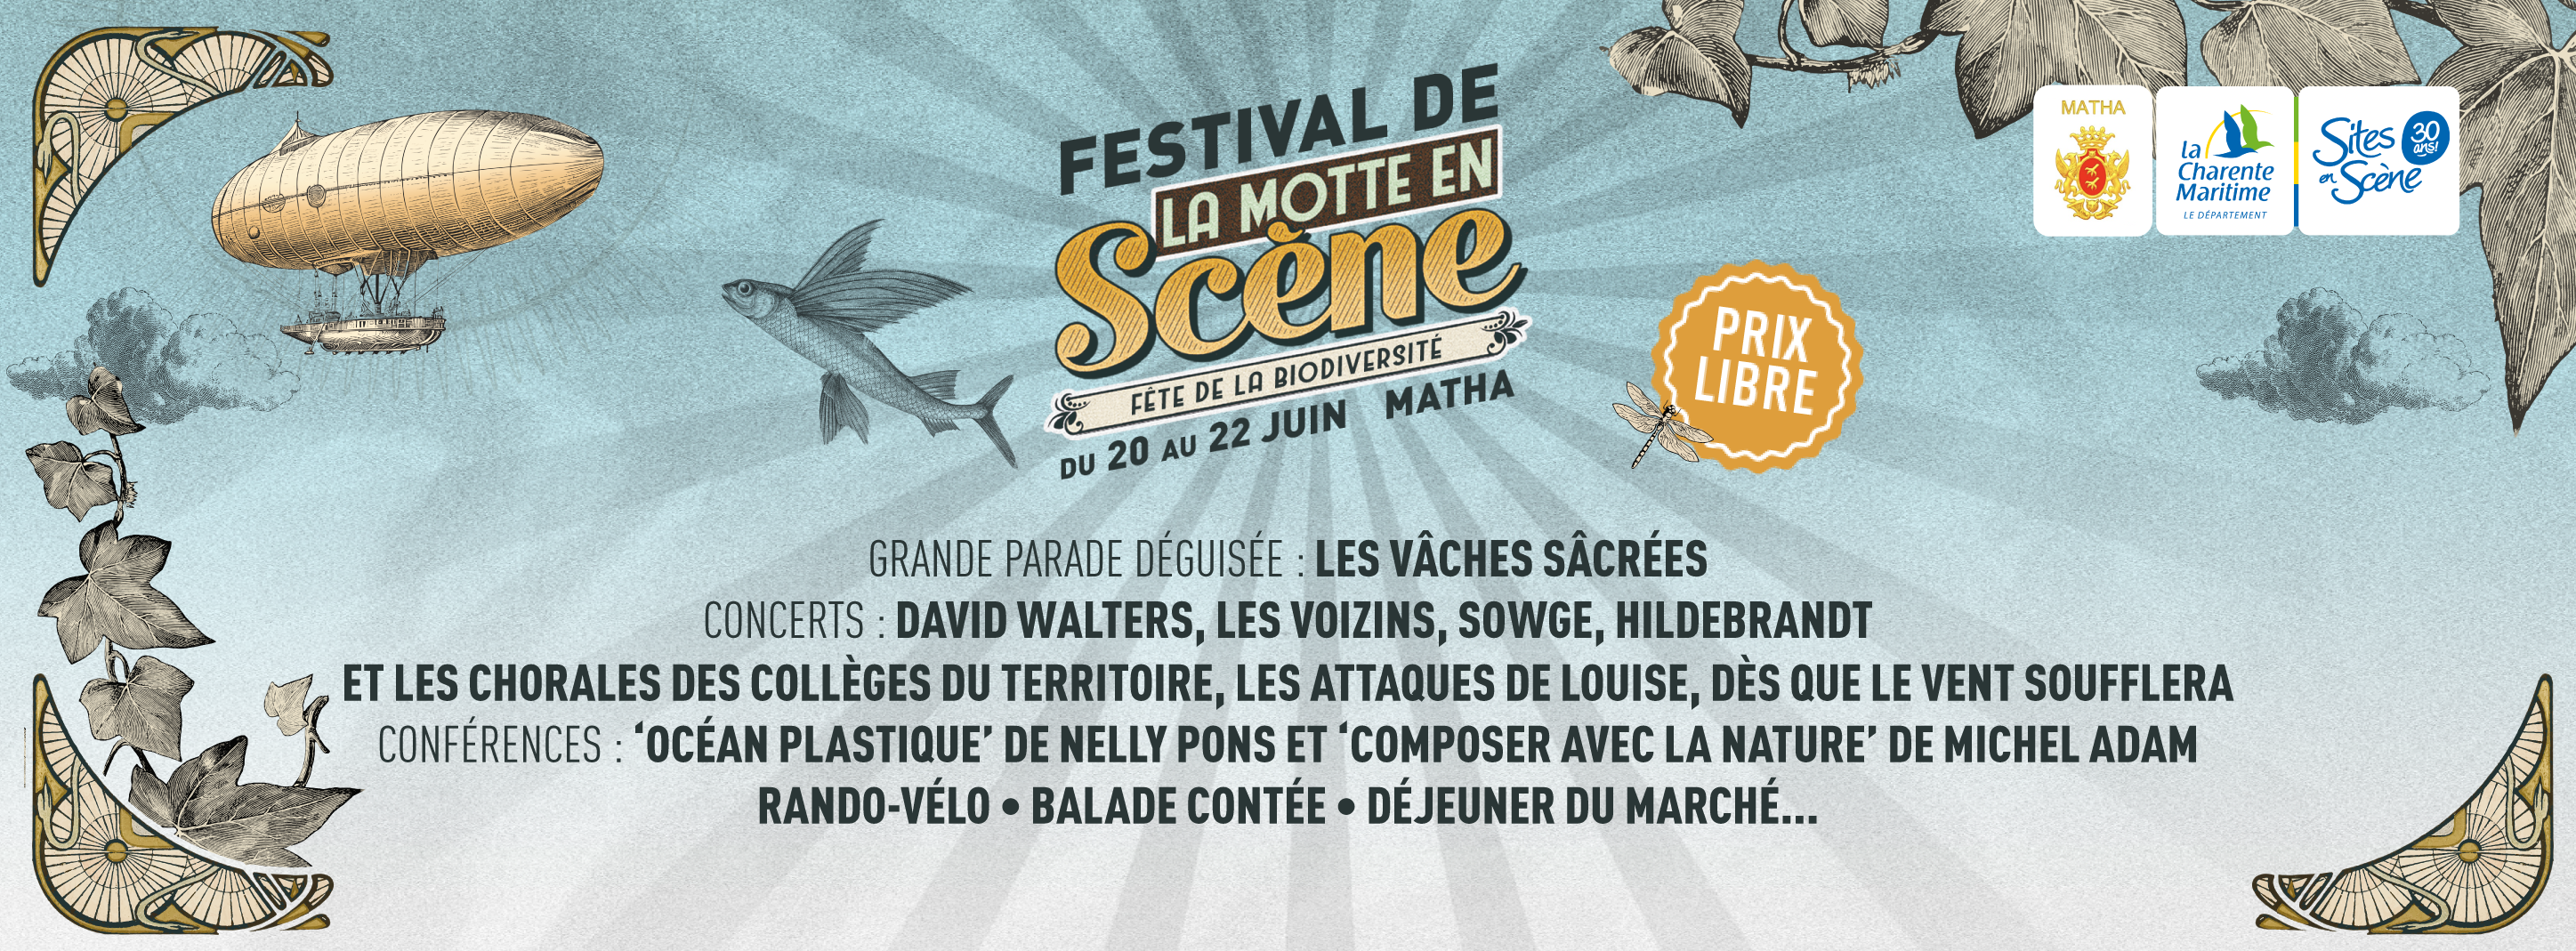 Festival de la Motte en Scène